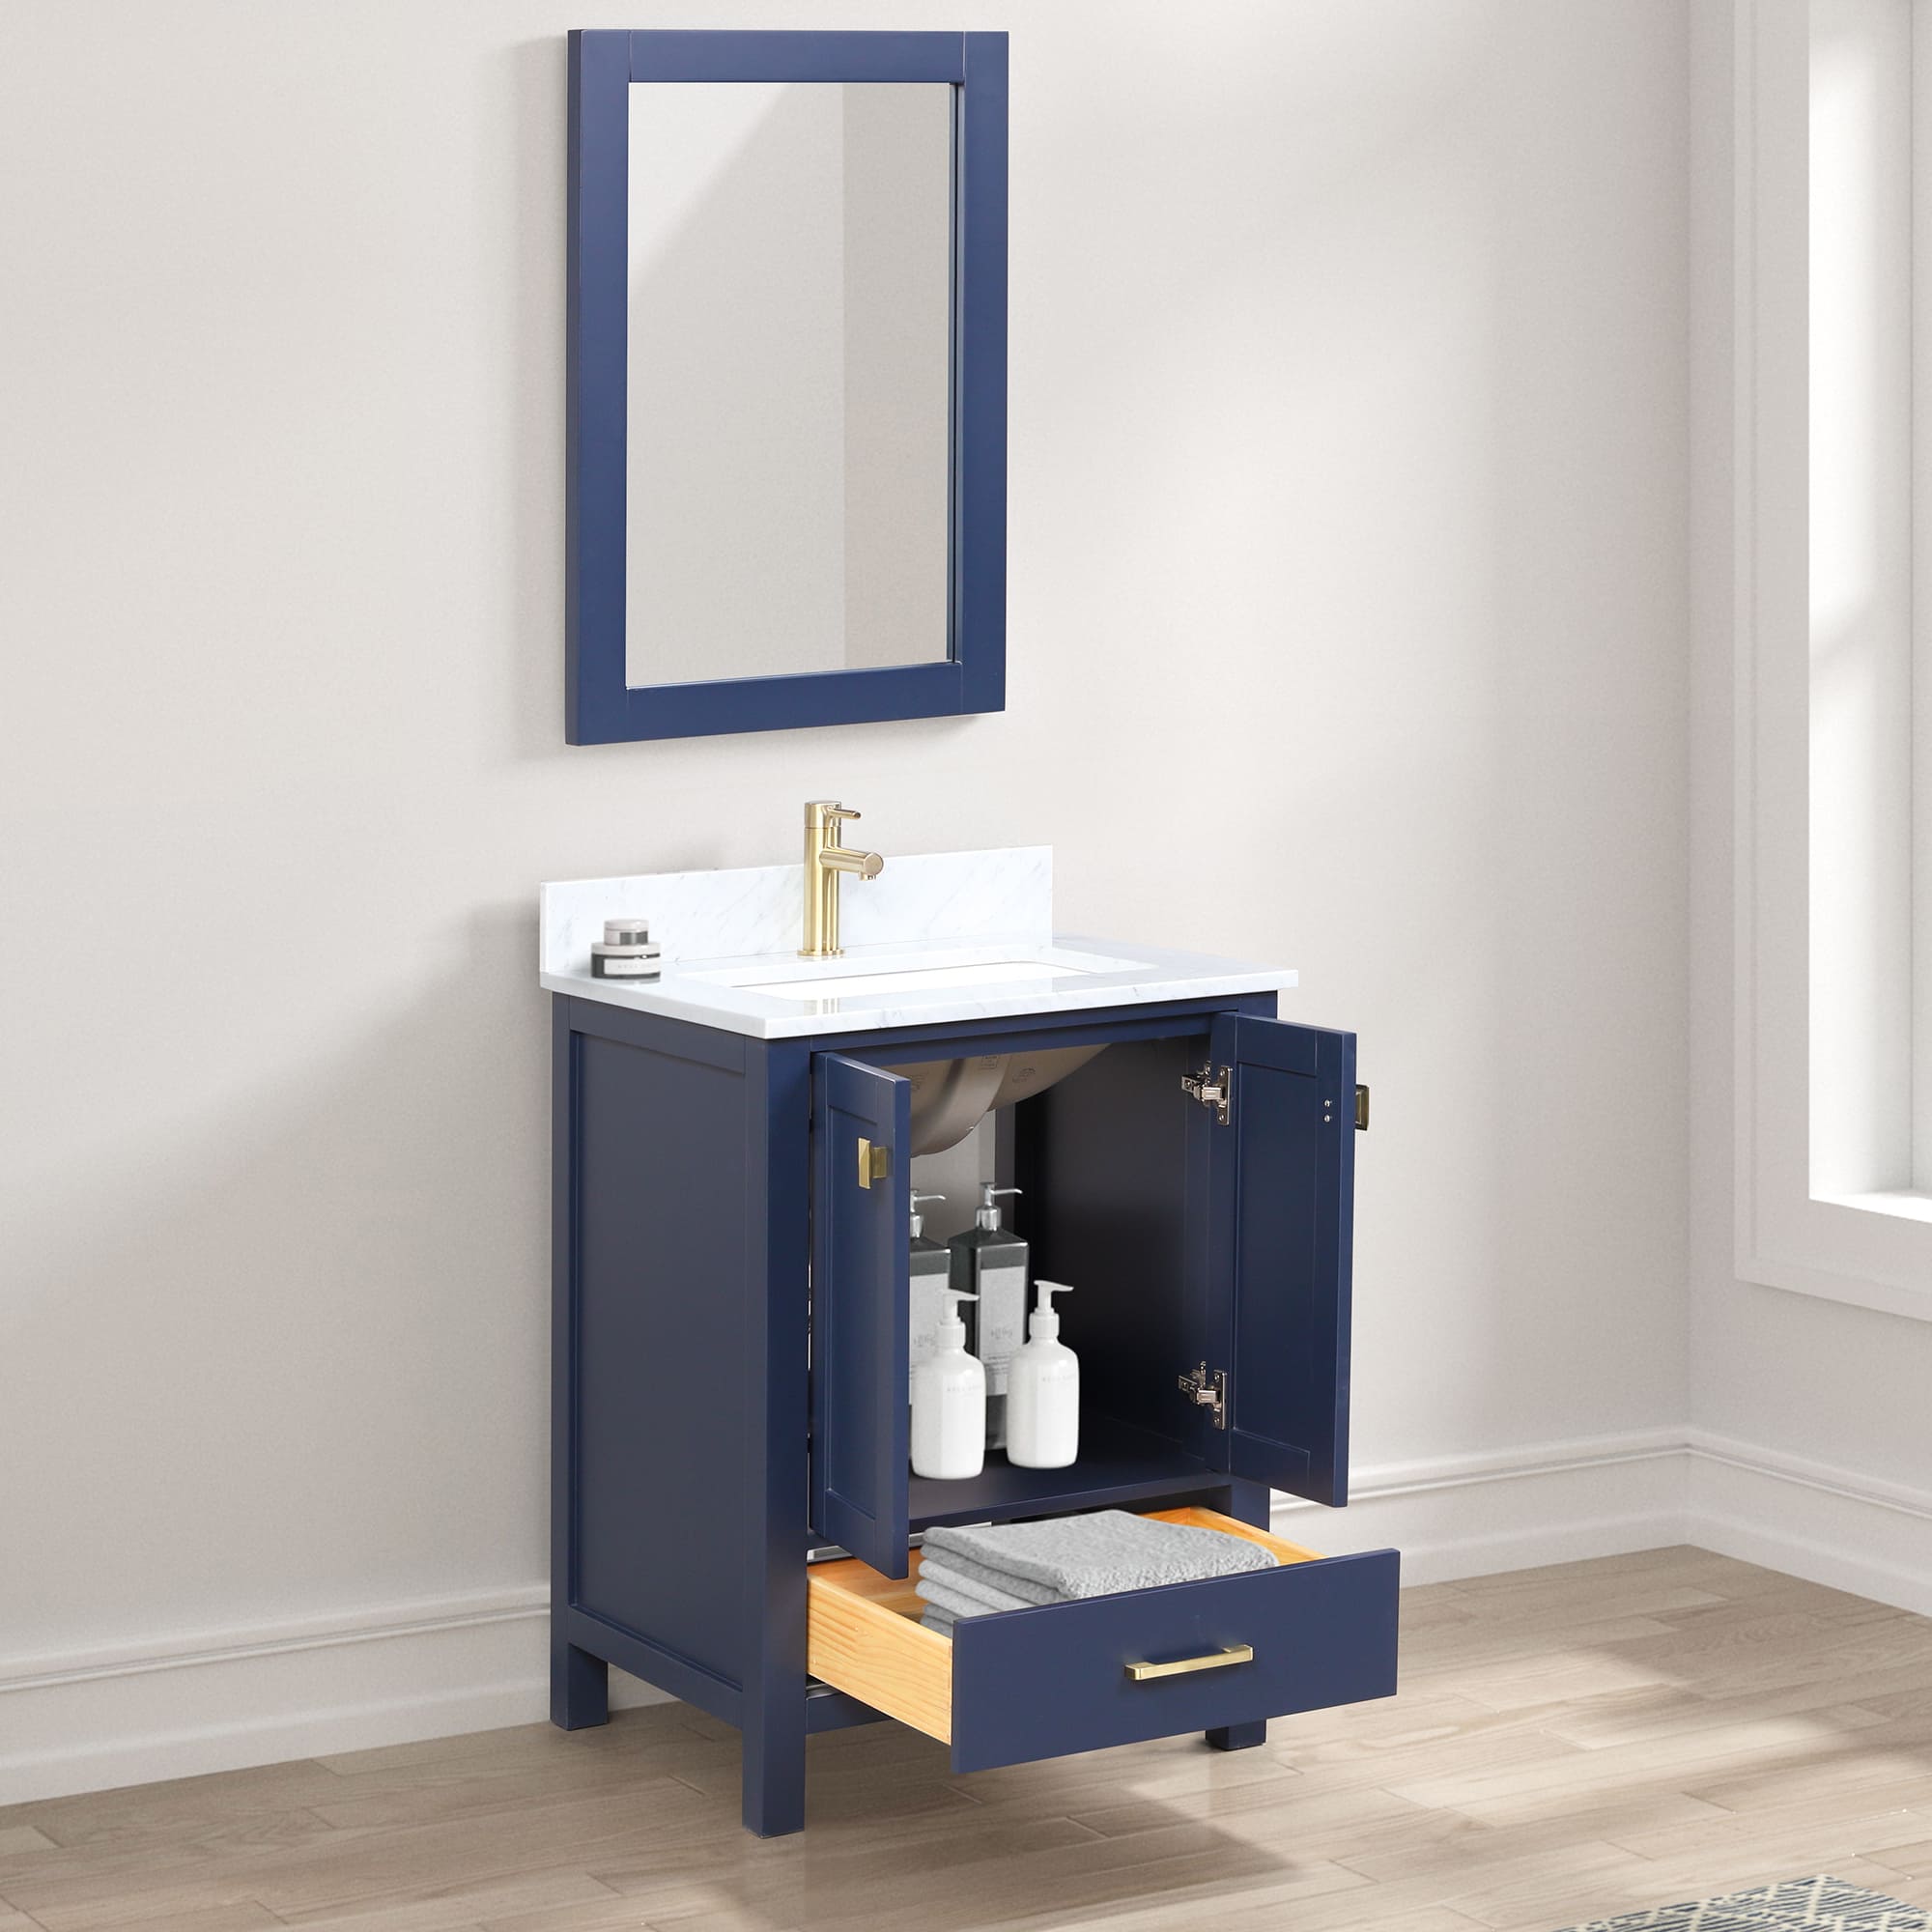 Geneva 24" Bathroom Vanity  #size_24"  #color_navy blue